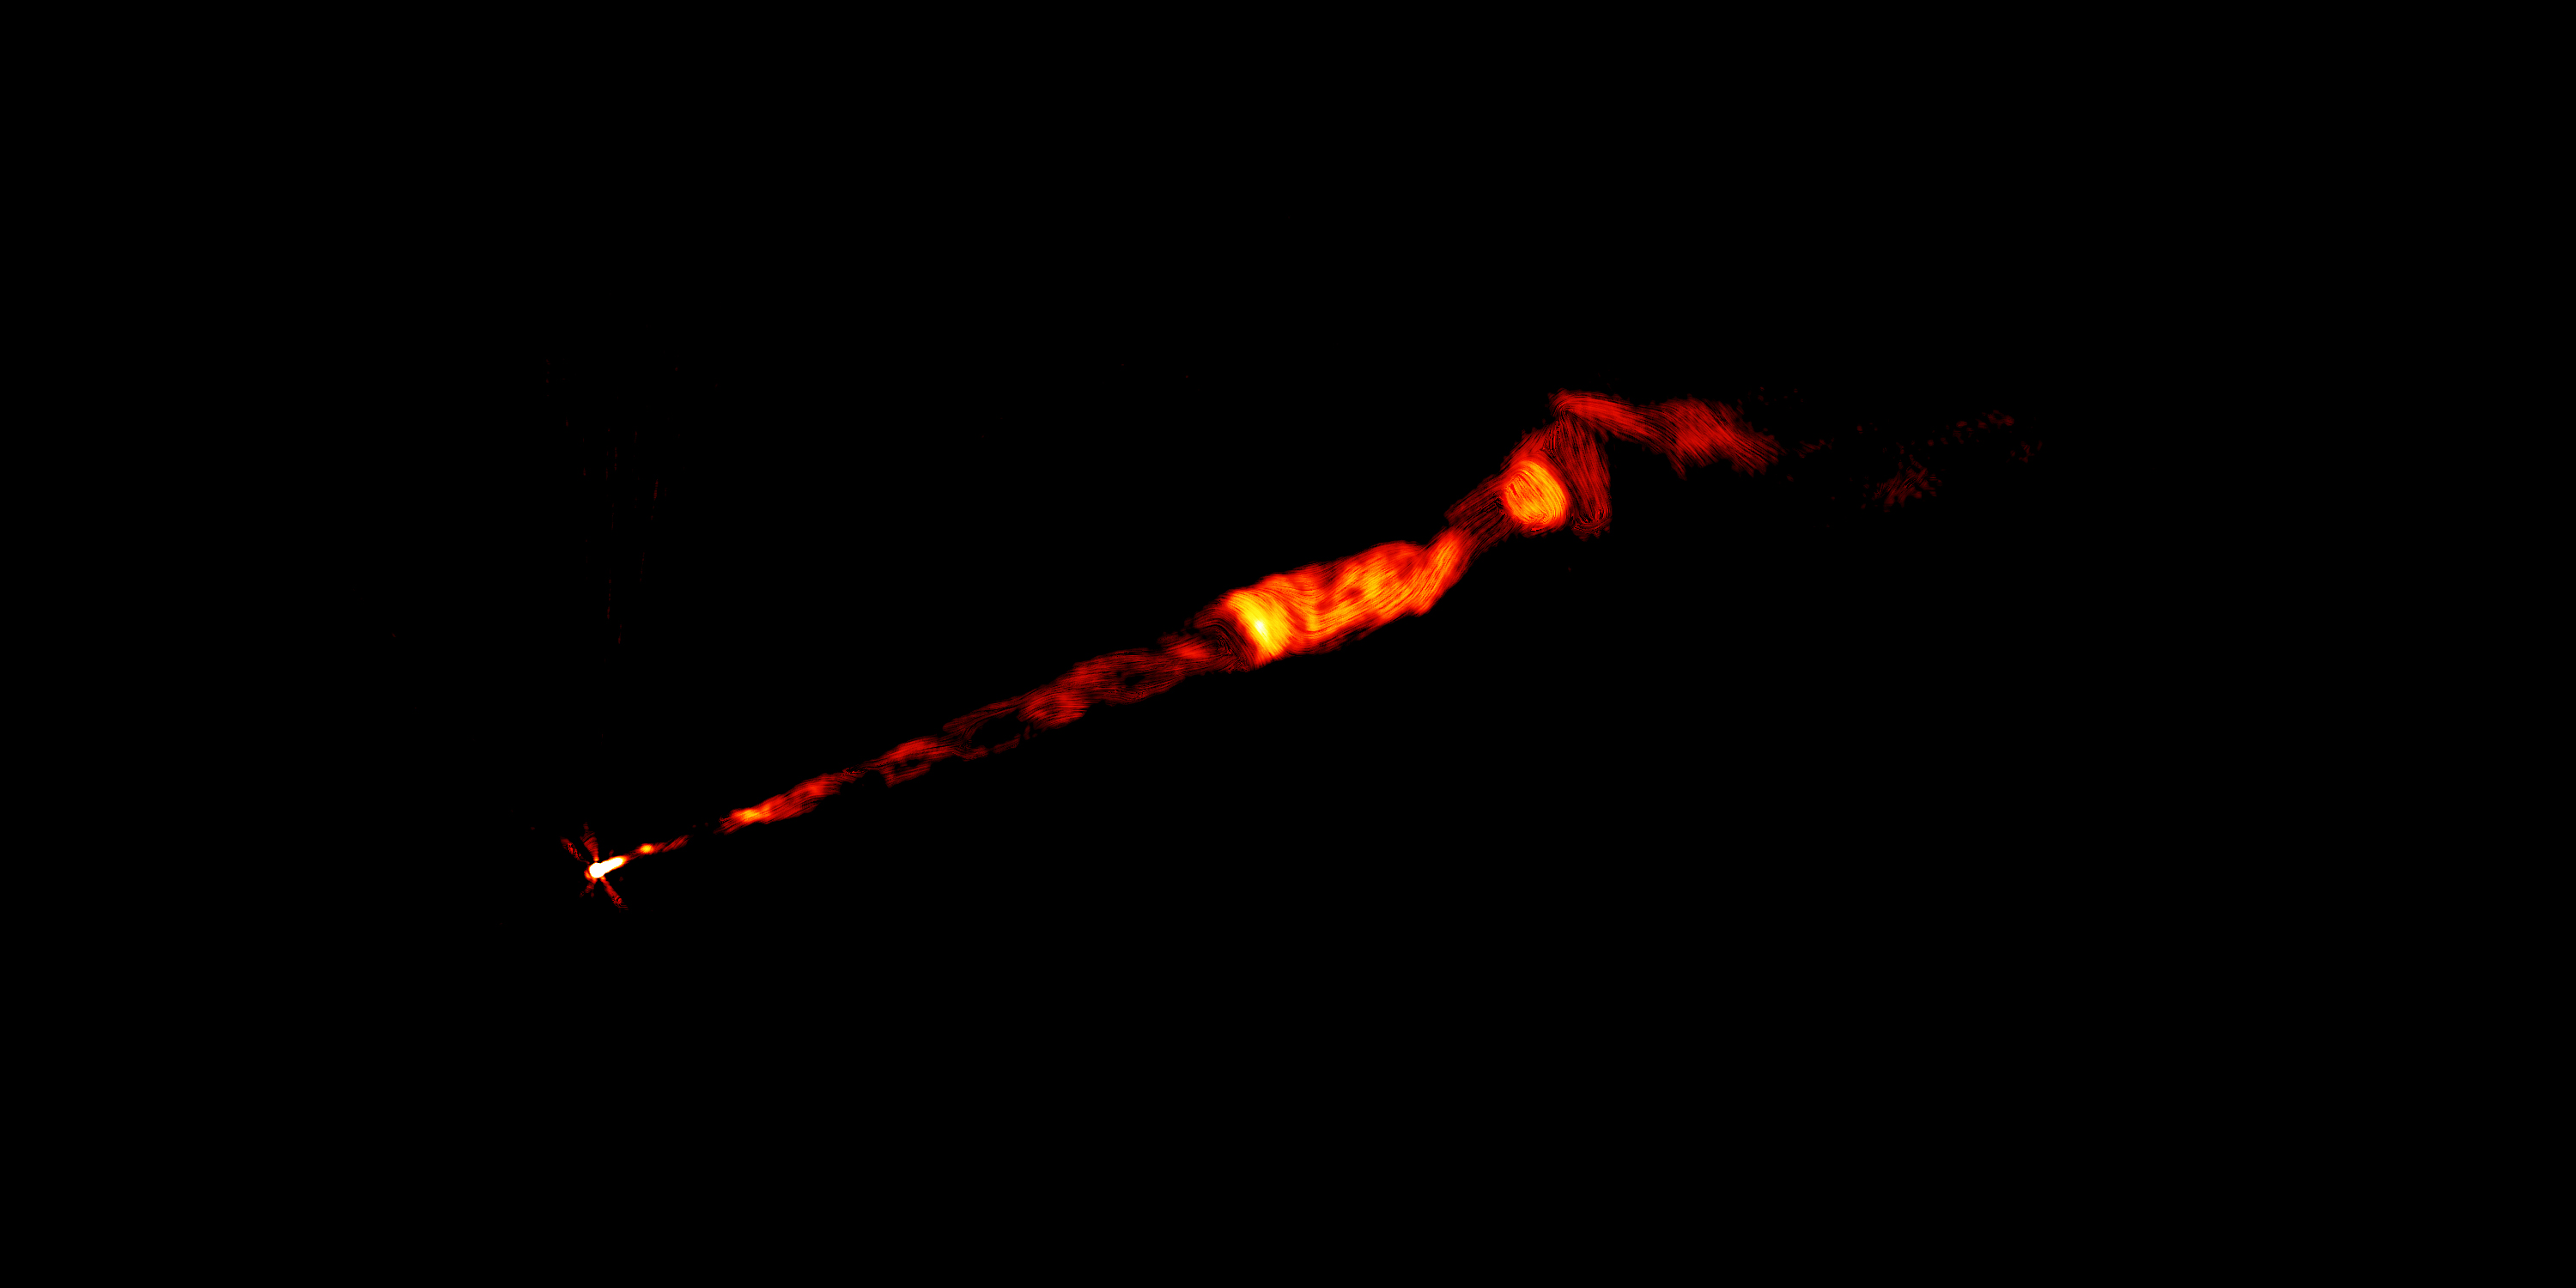 Cette image en fausses couleurs du&nbsp;VLA, réalisée à plusieurs fréquences radio, montre un jet dans le domaine radio provenant de la galaxie M87. Le jet, vu sur cette image, mesure environ 8.000 années-lumière. Cette image montre clairement la structure hélicoïdale en forme de tire-bouchon dans la partie interne du jet, qui prend naissance au point lumineux à gauche, au cœur de la galaxie, où réside un trou noir supermassif. © Pasetto et al., Sophia Dagnello, NRAO/AUI/NSF